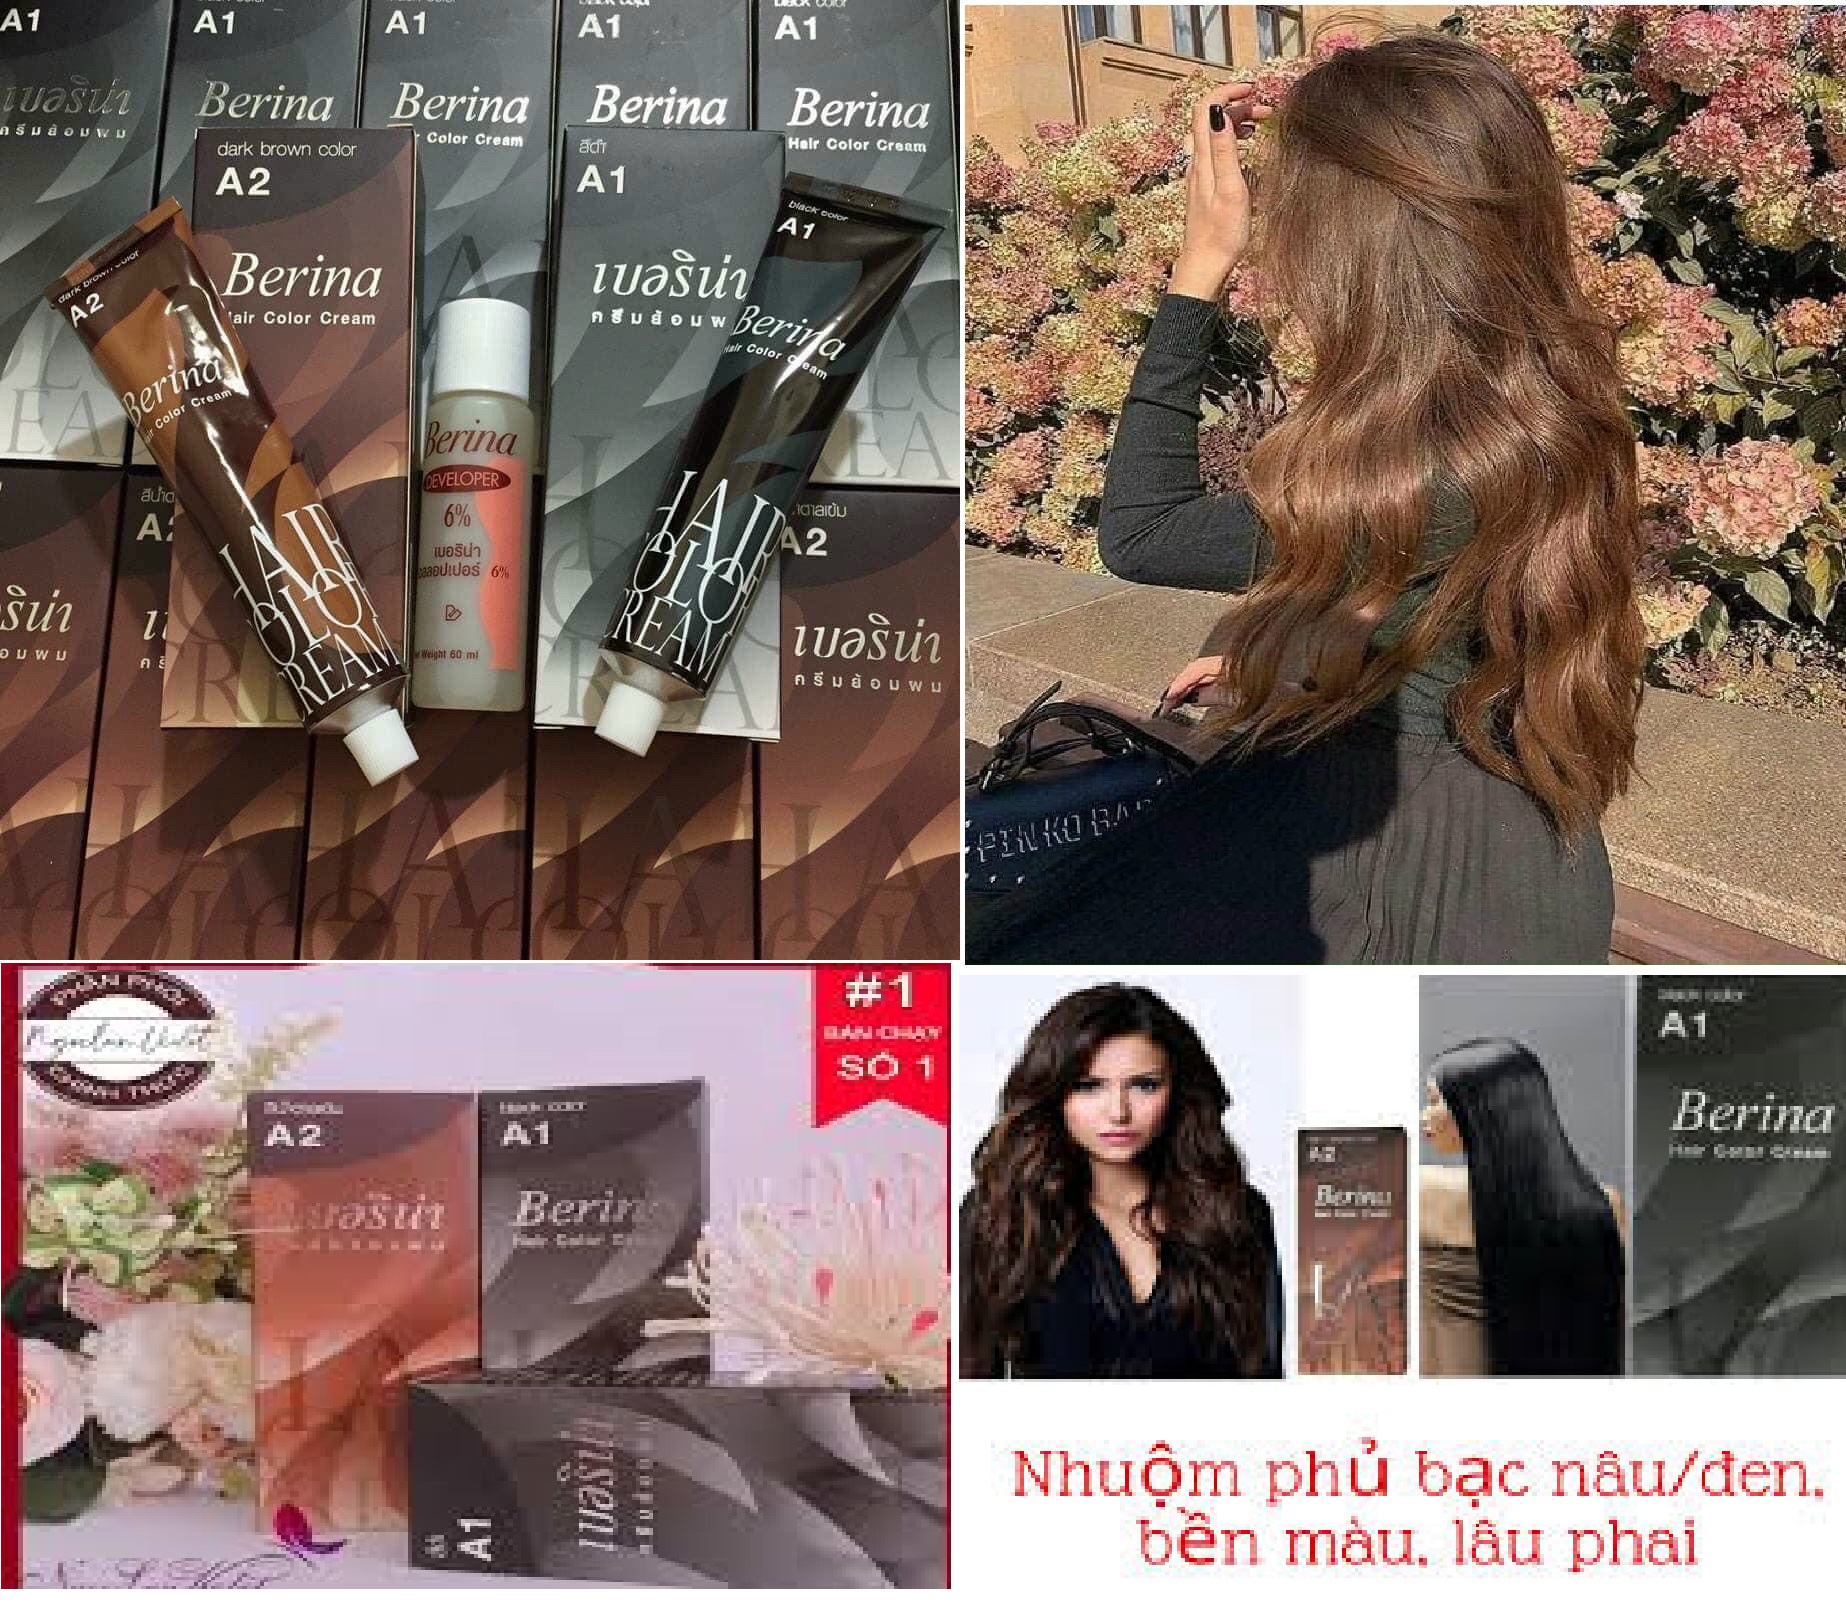 Bạn muốn biết thêm về lịch sử giá của một trong những sản phẩm nhuộm tóc được ưa chuộng nhất hiện nay đến từ Thái Lan? Hãy xem hình ảnh liên quan để biết thêm về thuốc nhuộm tóc Berina và sự phát triển của nó qua các thập niên. Đừng bỏ lỡ cơ hội để tìm hiểu về sản phẩm này nhé!